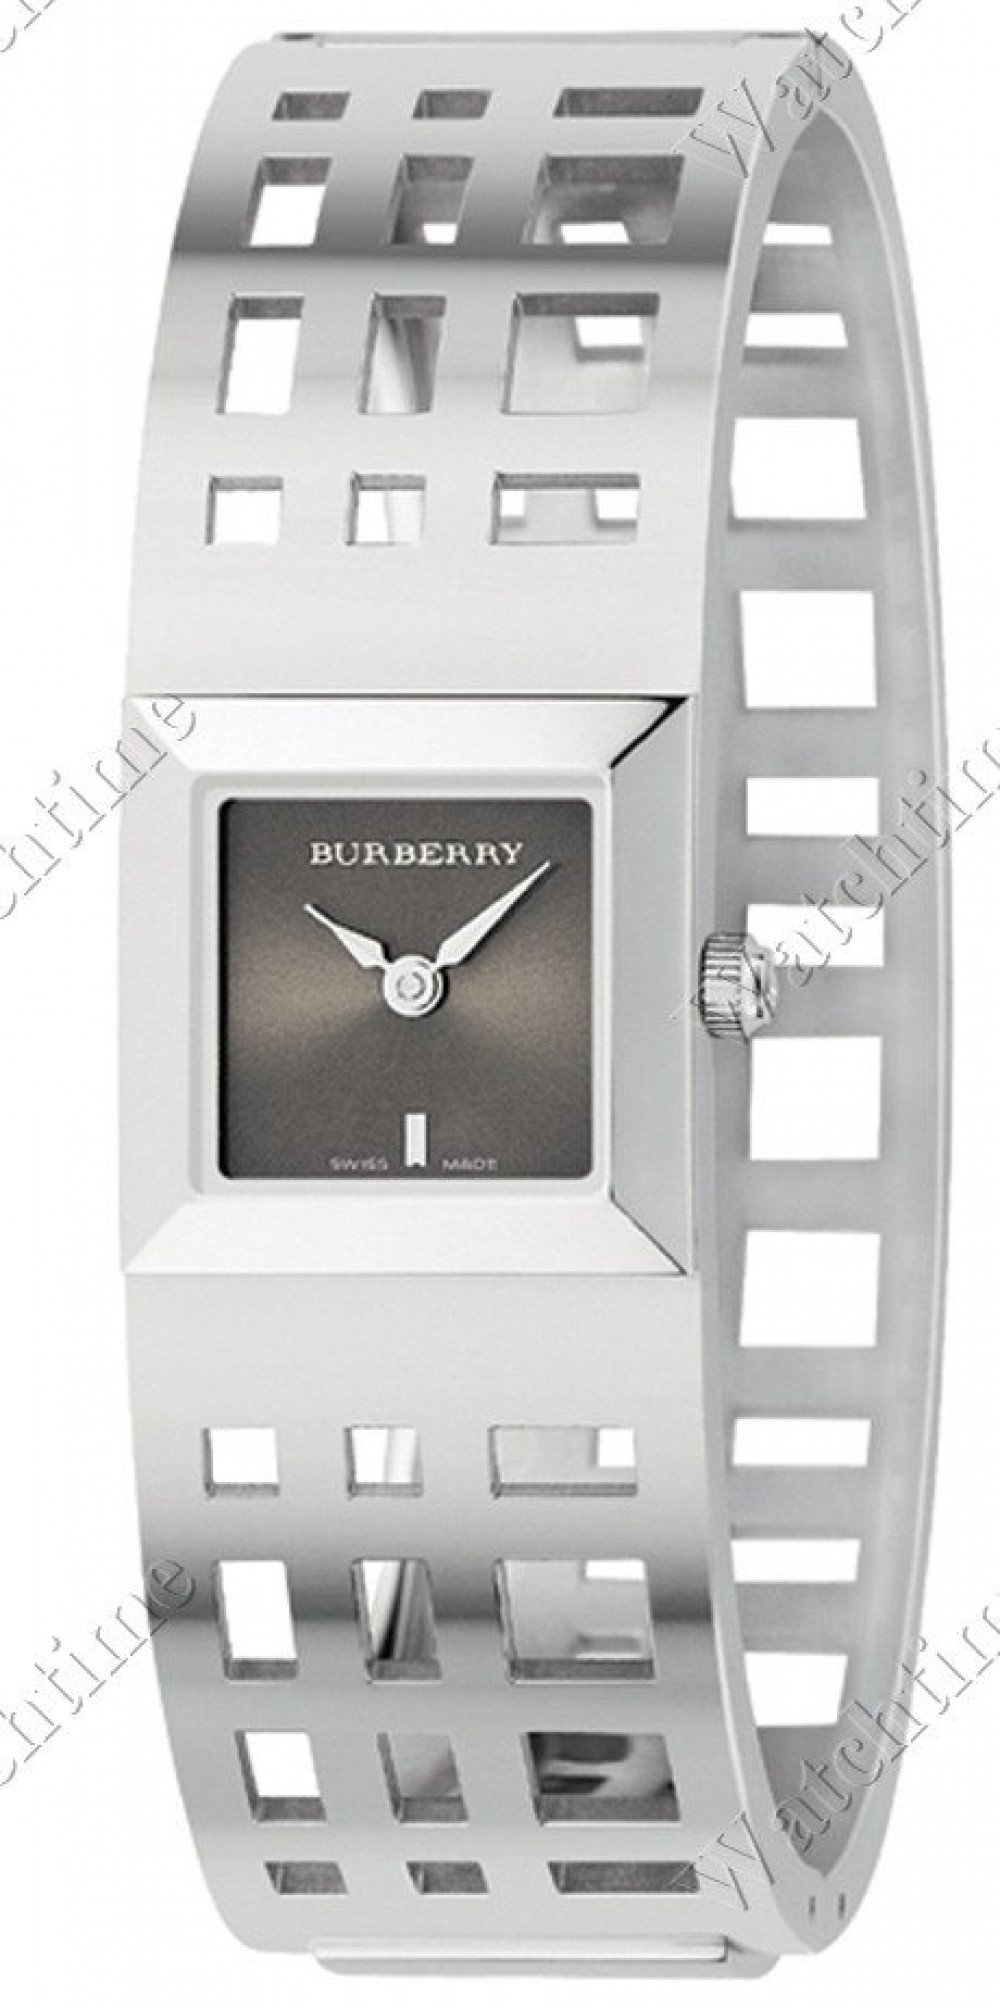 Zegarek firmy Burberry, model Check Bangle